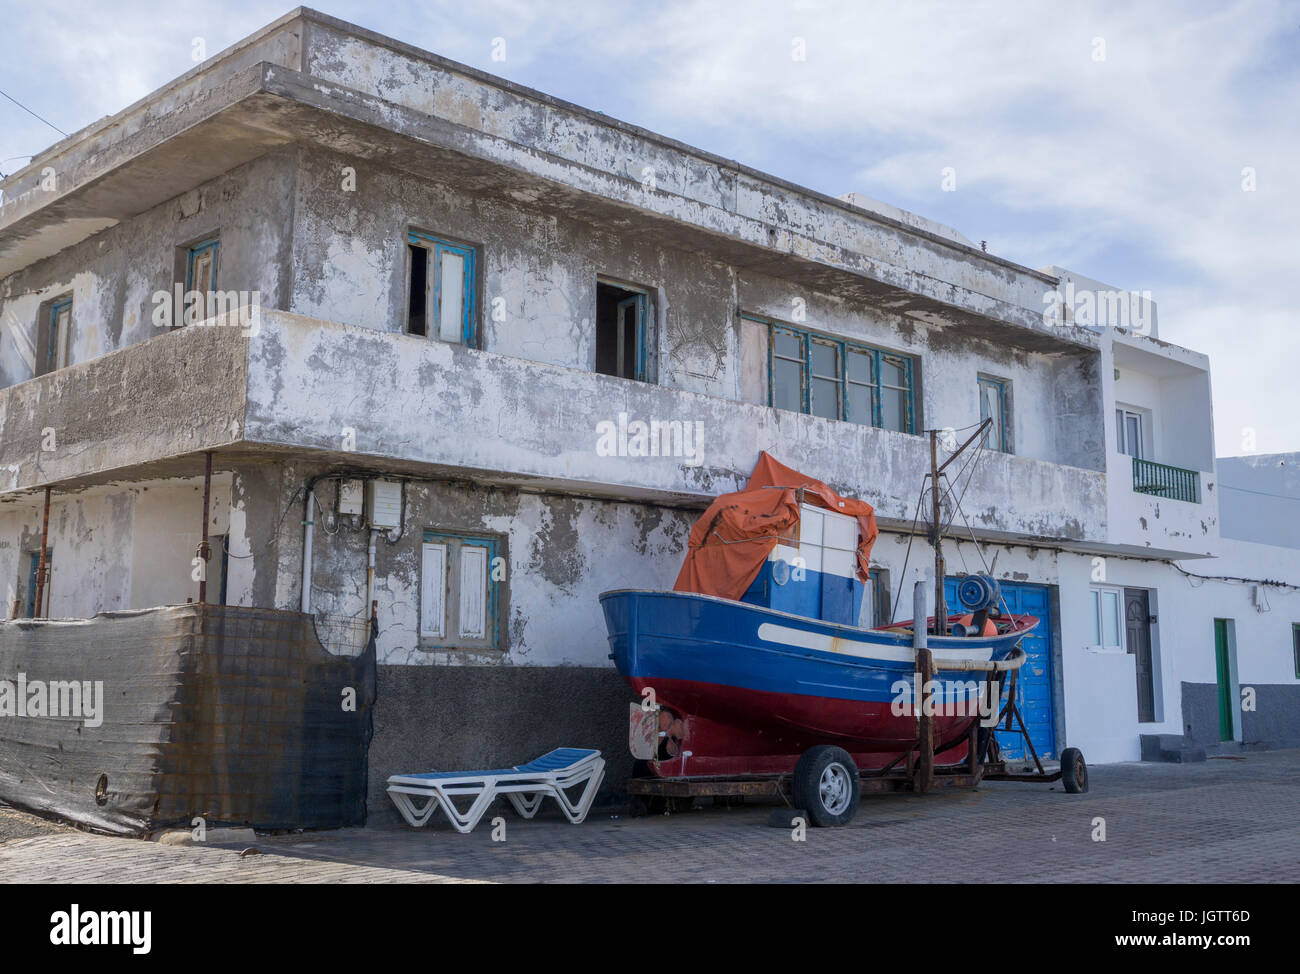 Angeln Boot auf Trailer zu einem baufälligen alten Haus, Dorf La Santa an der Nordküste der Insel Lanzarote, Kanarische Inseln, Spanien, Europa Stockfoto